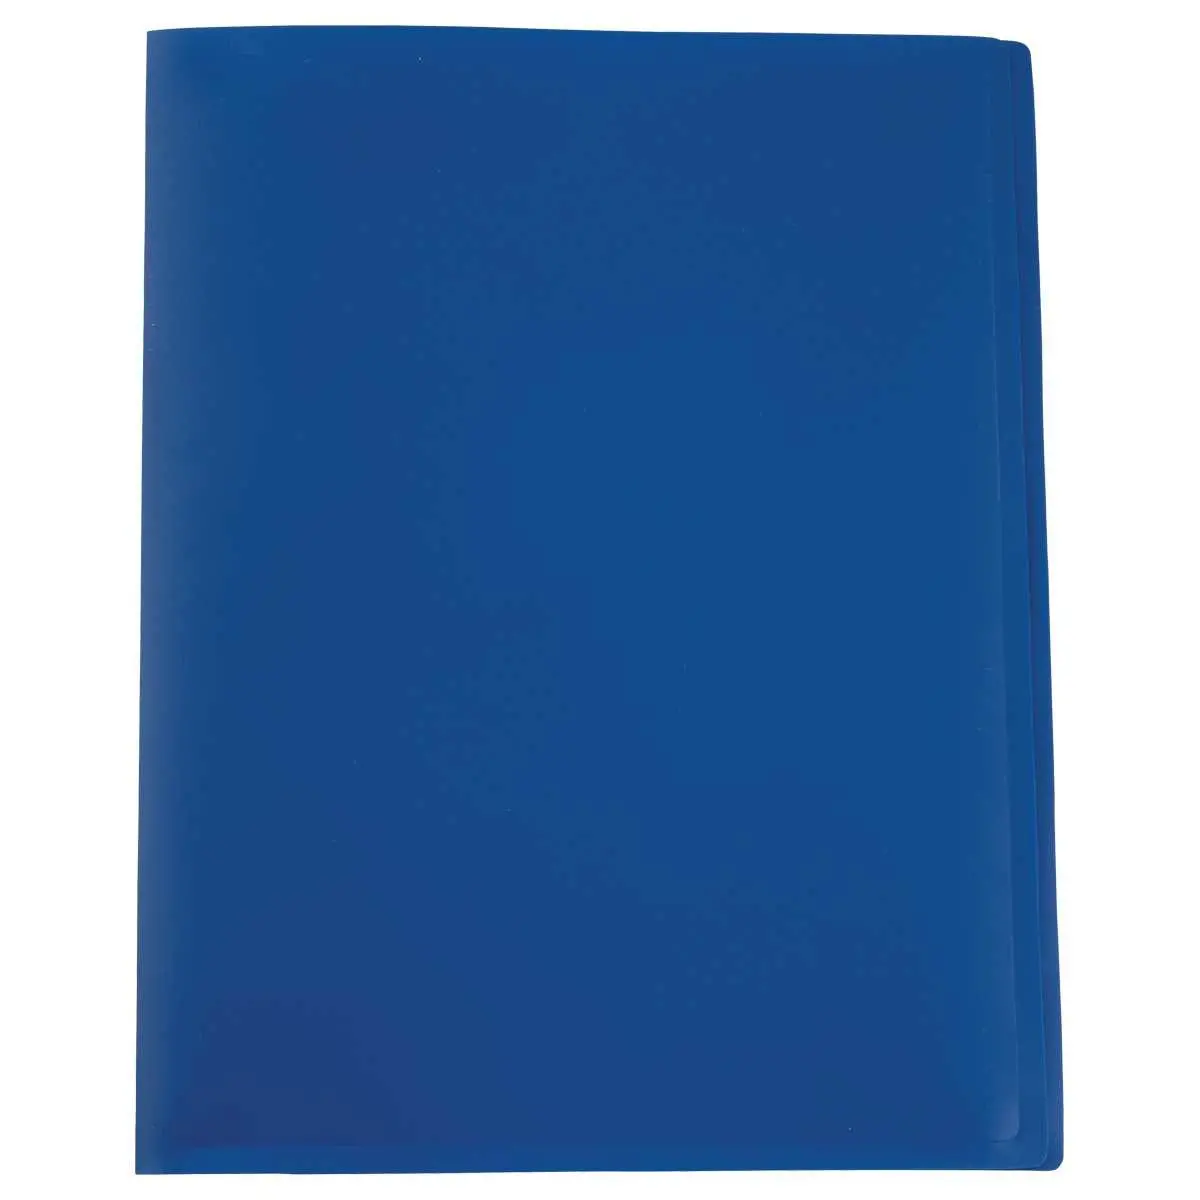 Protège-documents économique - A4 - 10 pochettes (20 vues) - Bleu photo du produit